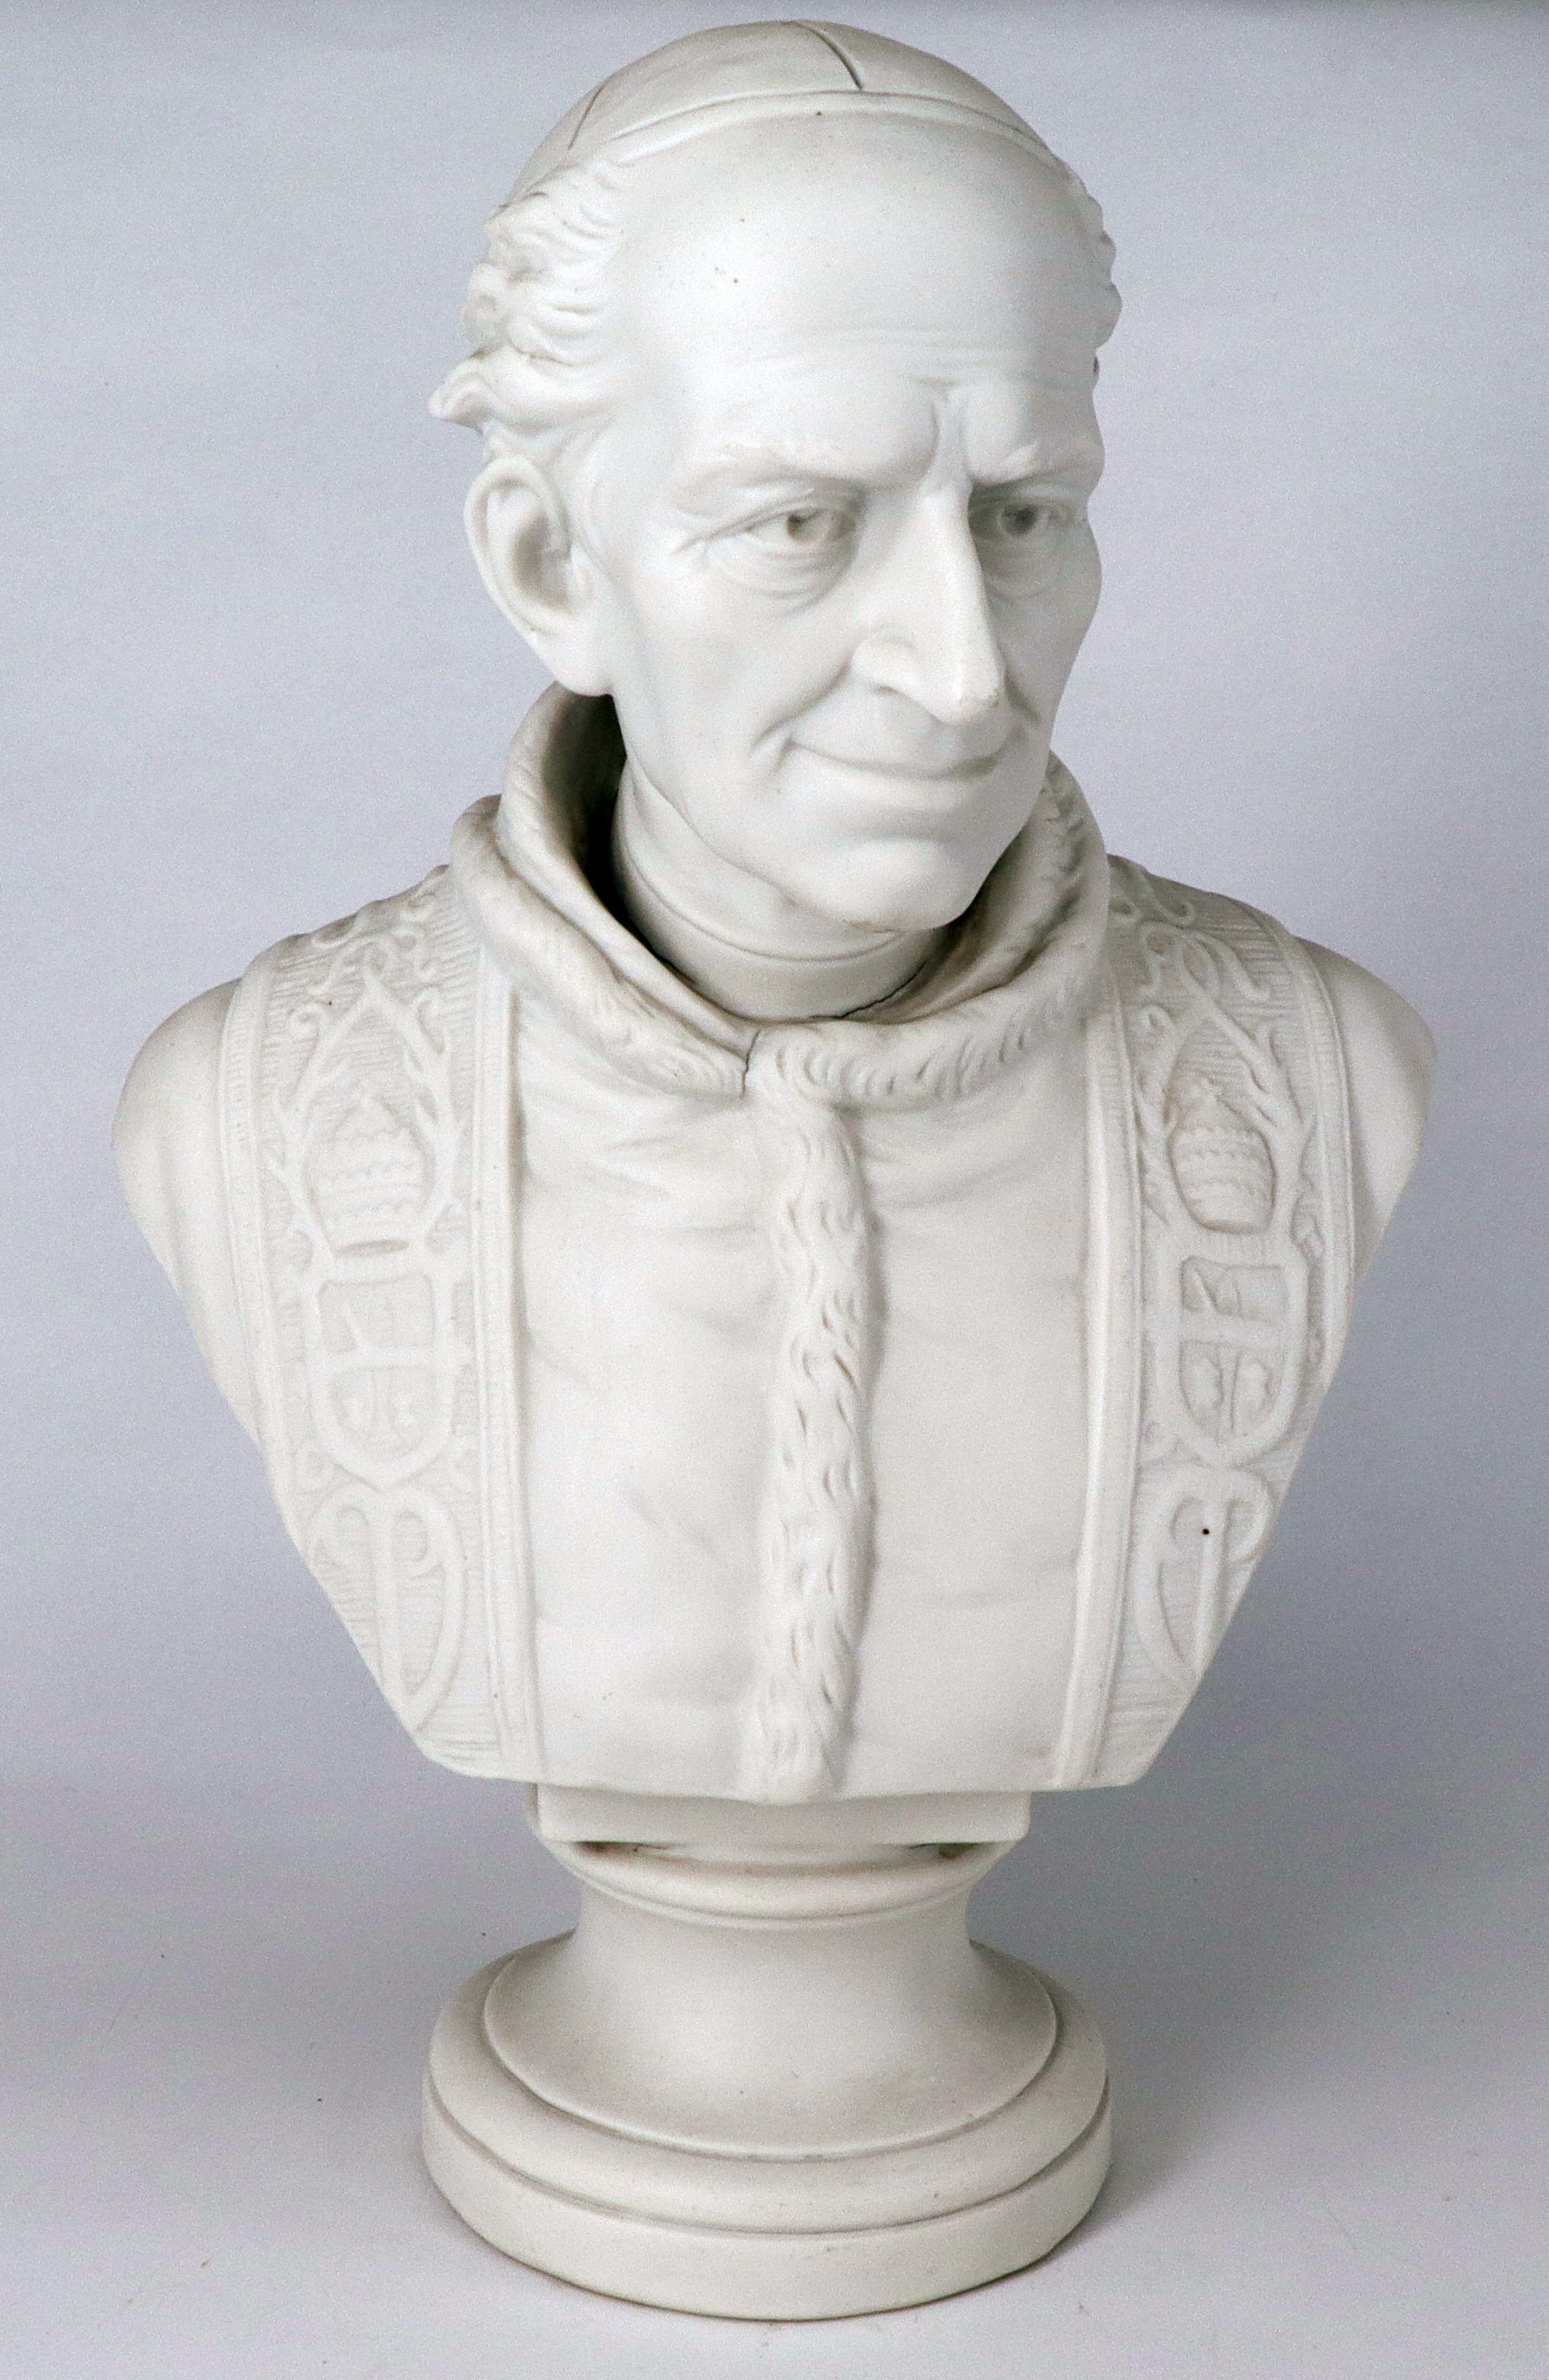 Büste Papst Leo XIII, Biskuitporzellan. Auf rundem Sockel, Brustprotrait in Mozetta und Stola mit